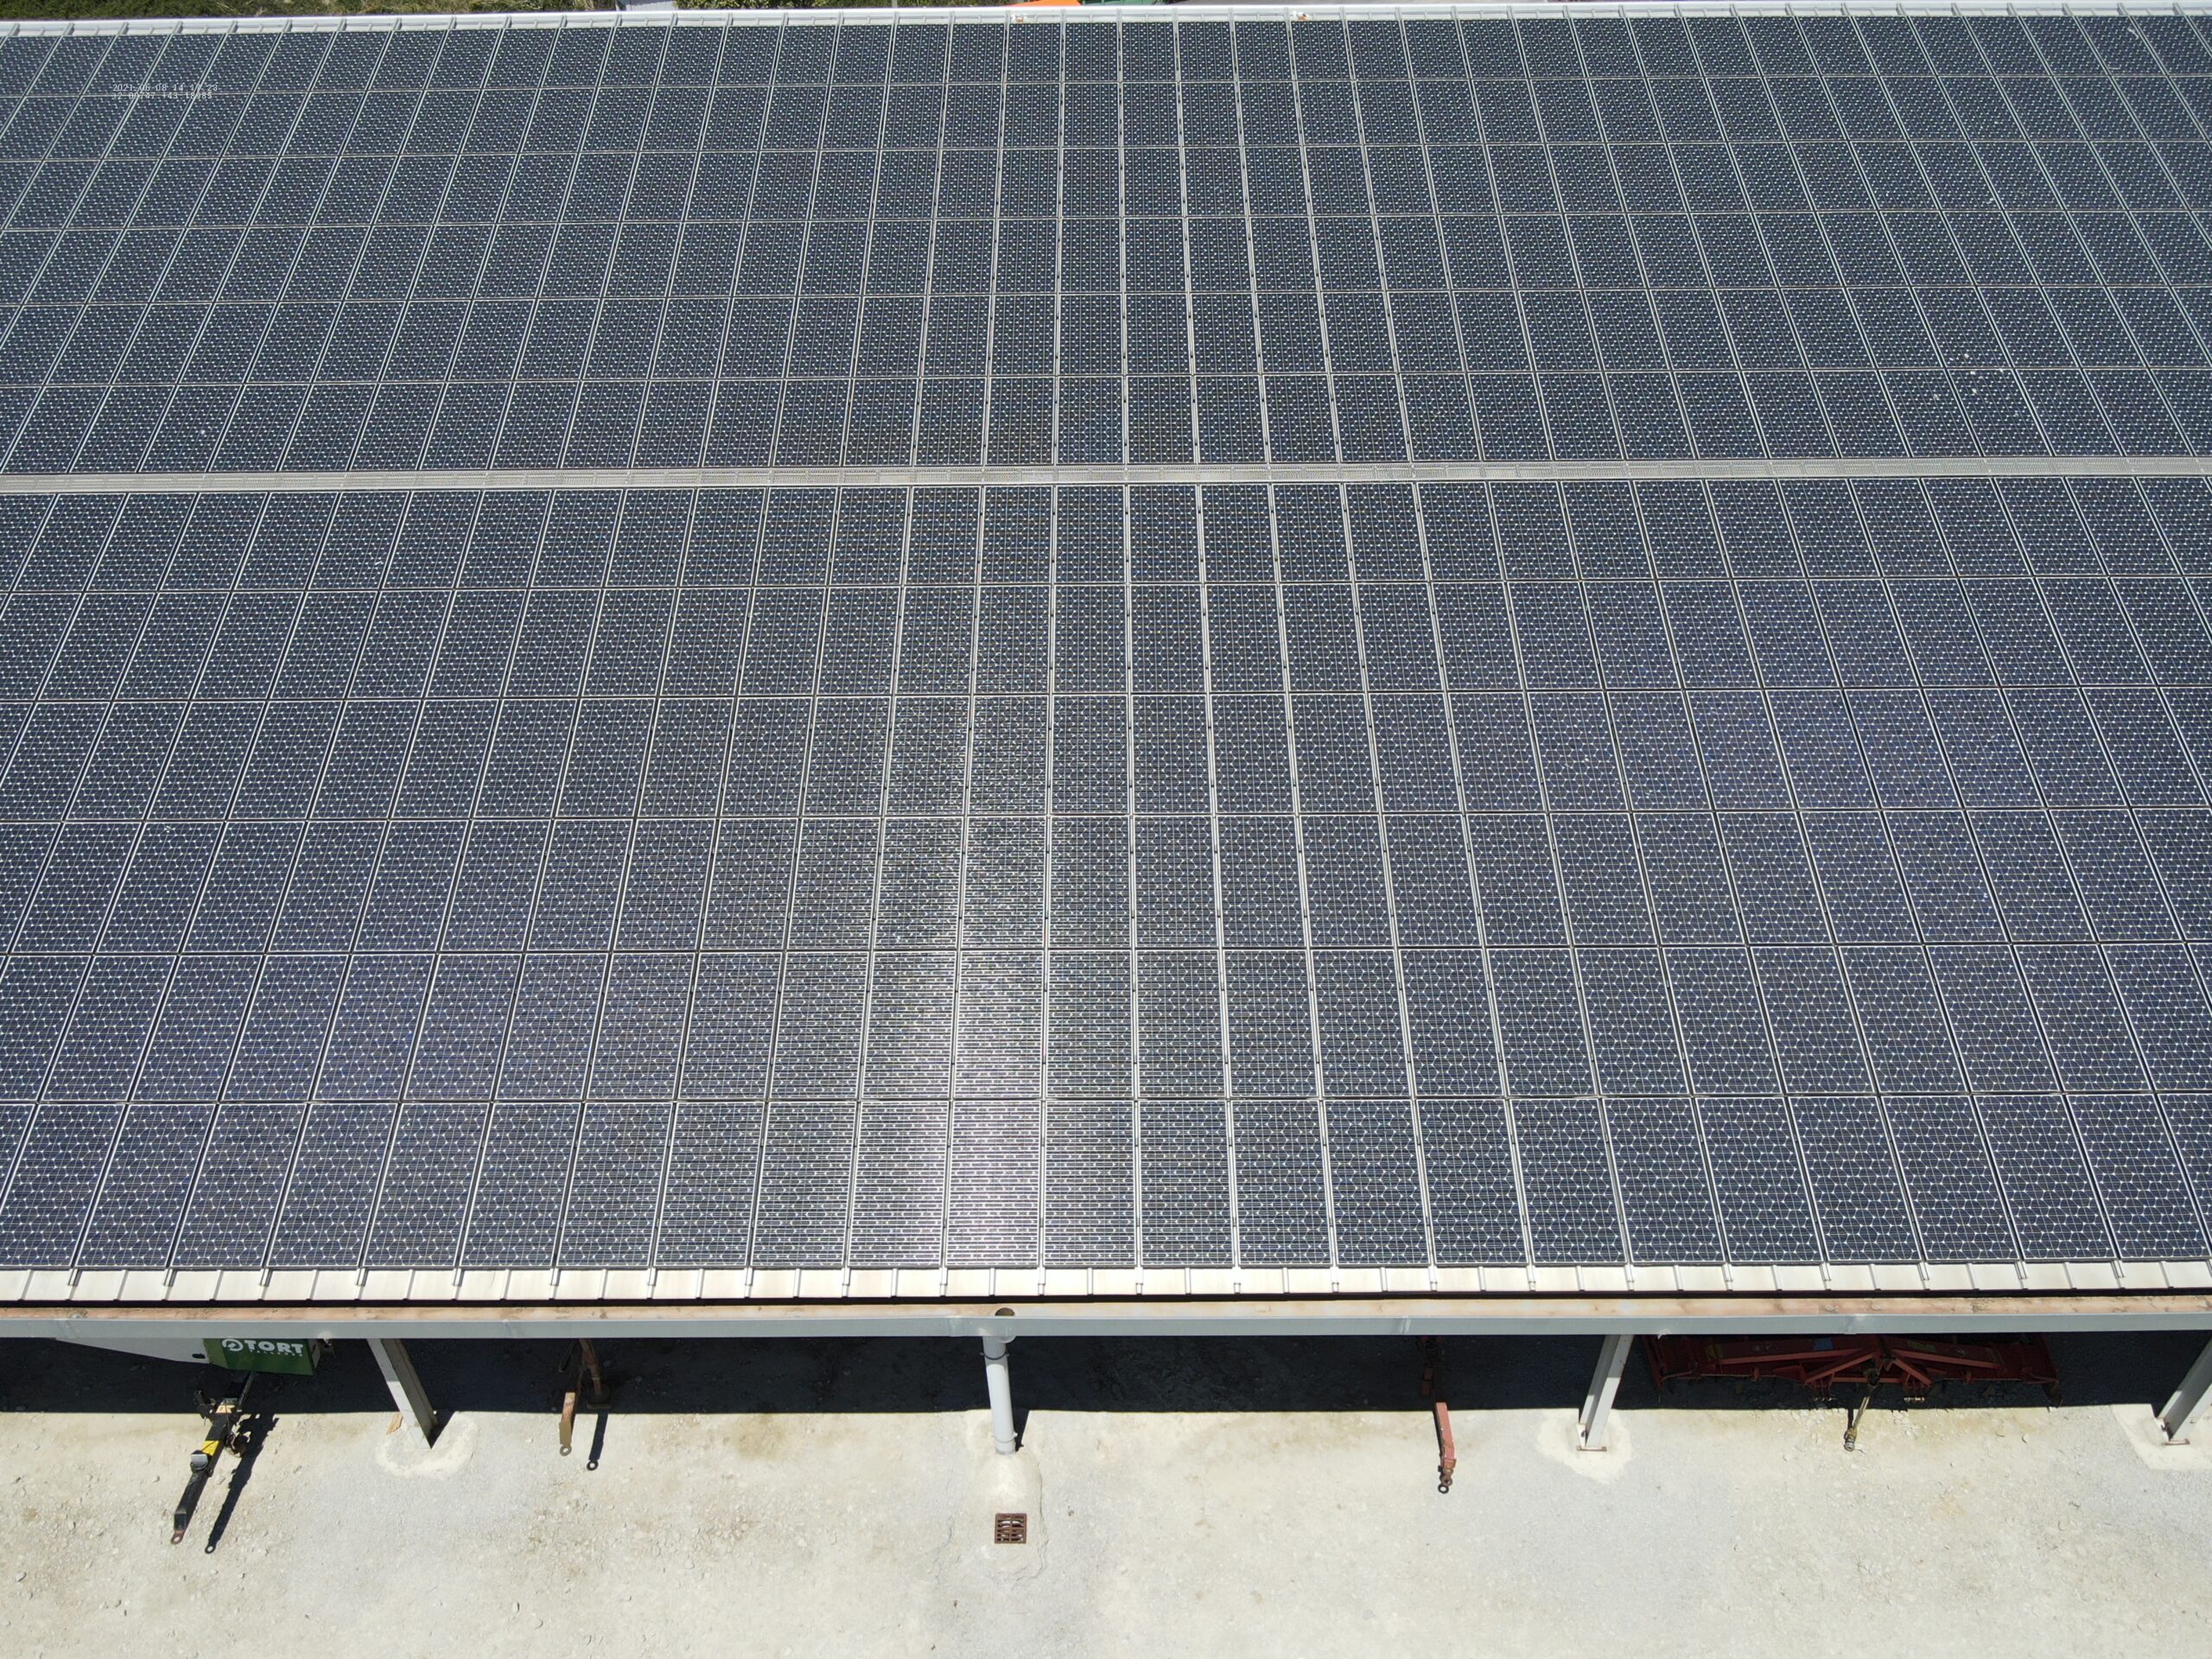 Un outil pour savoir s’il est pertinent d’installer des panneaux solaires sur votre toit